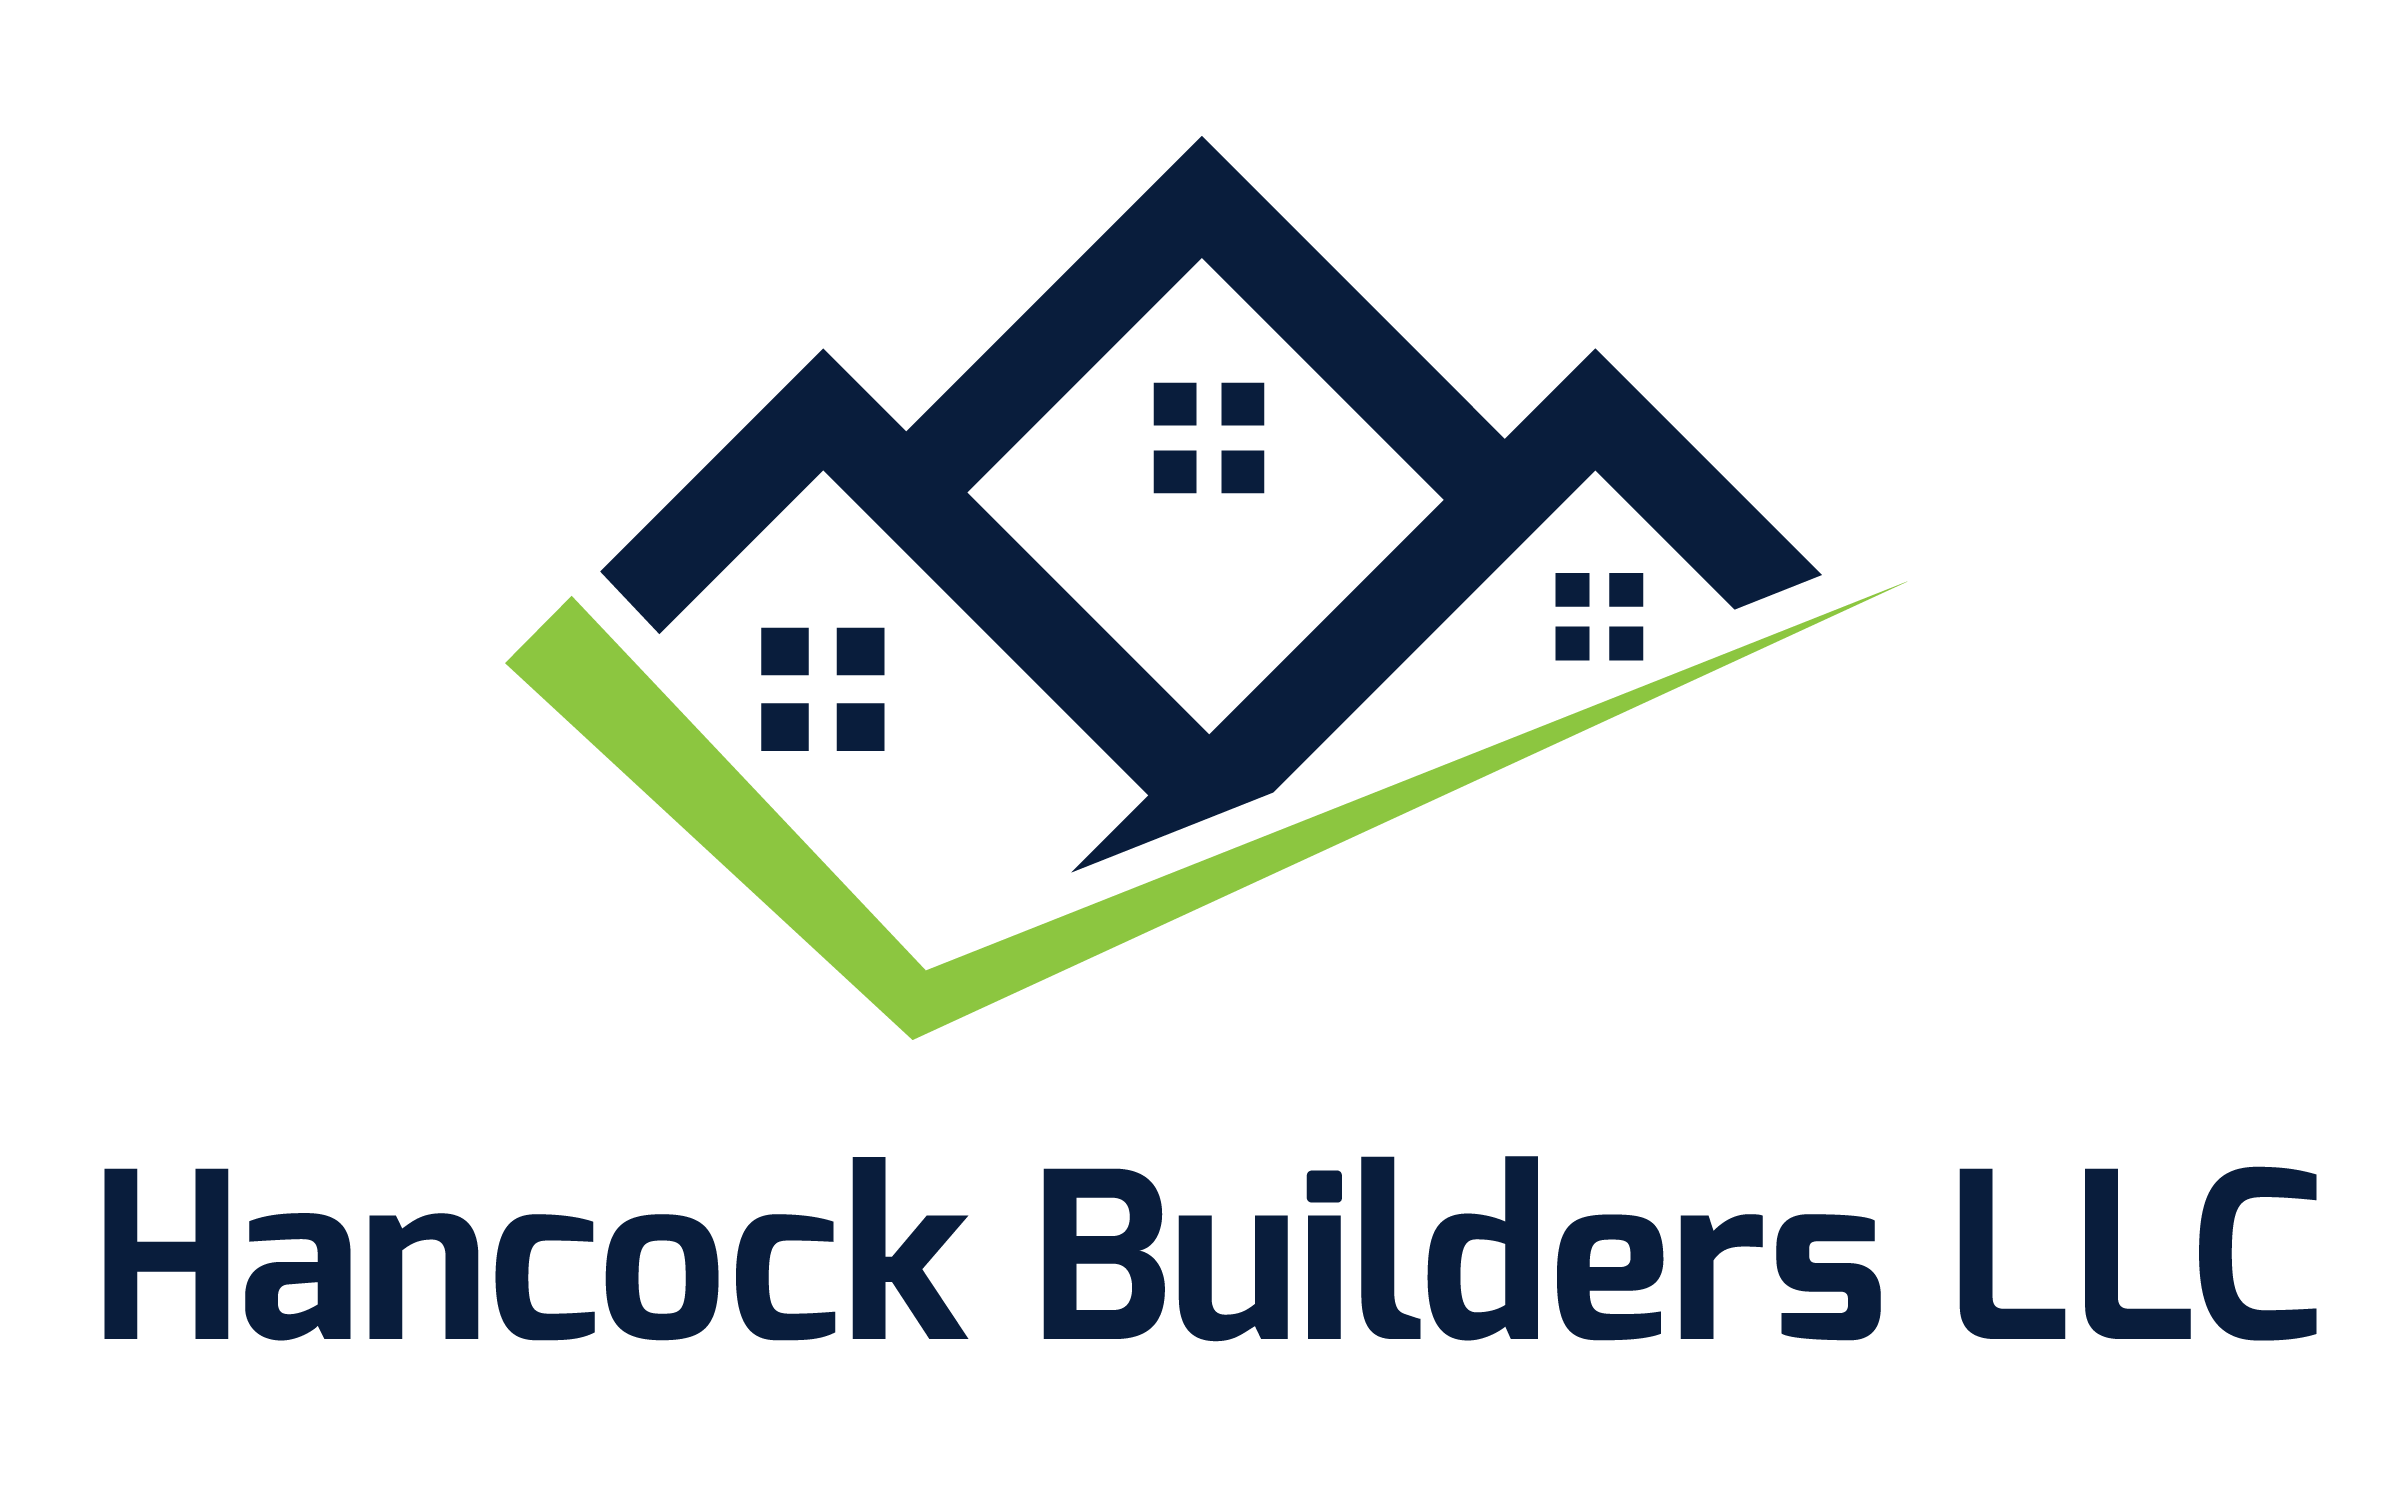 Hancock Builders LLC